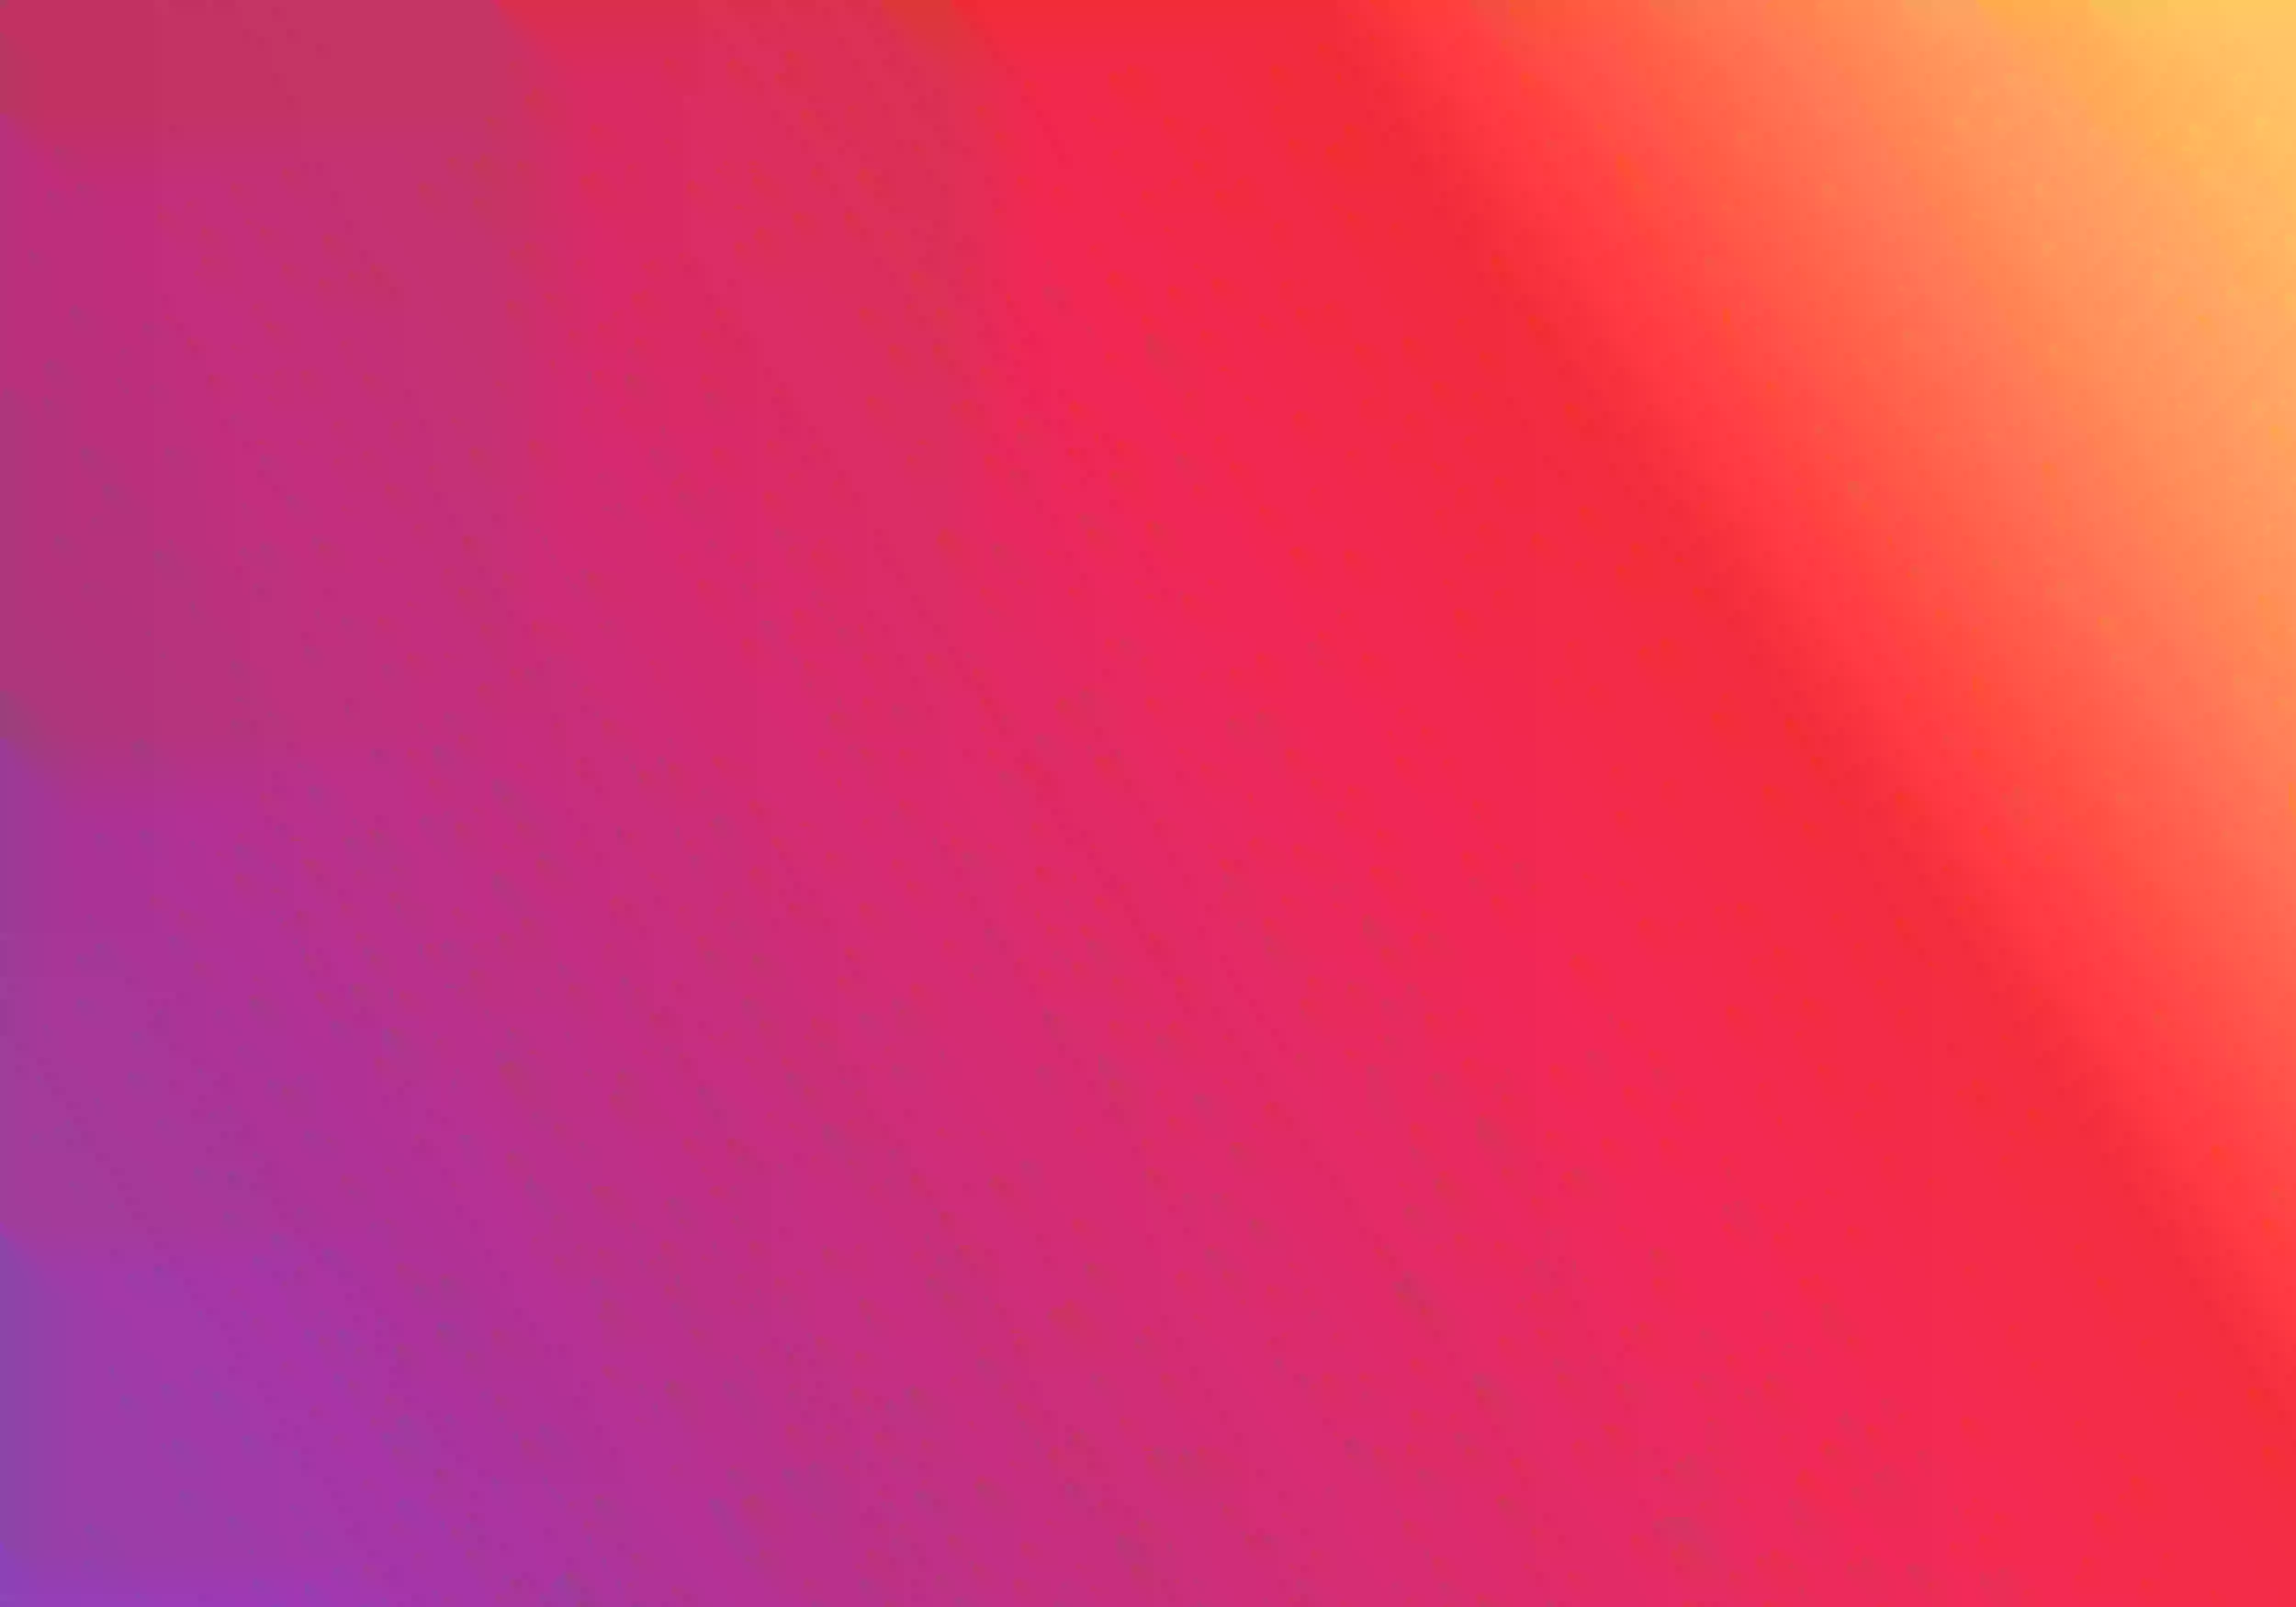 Background com cores usadas em algumas logos do Instagram